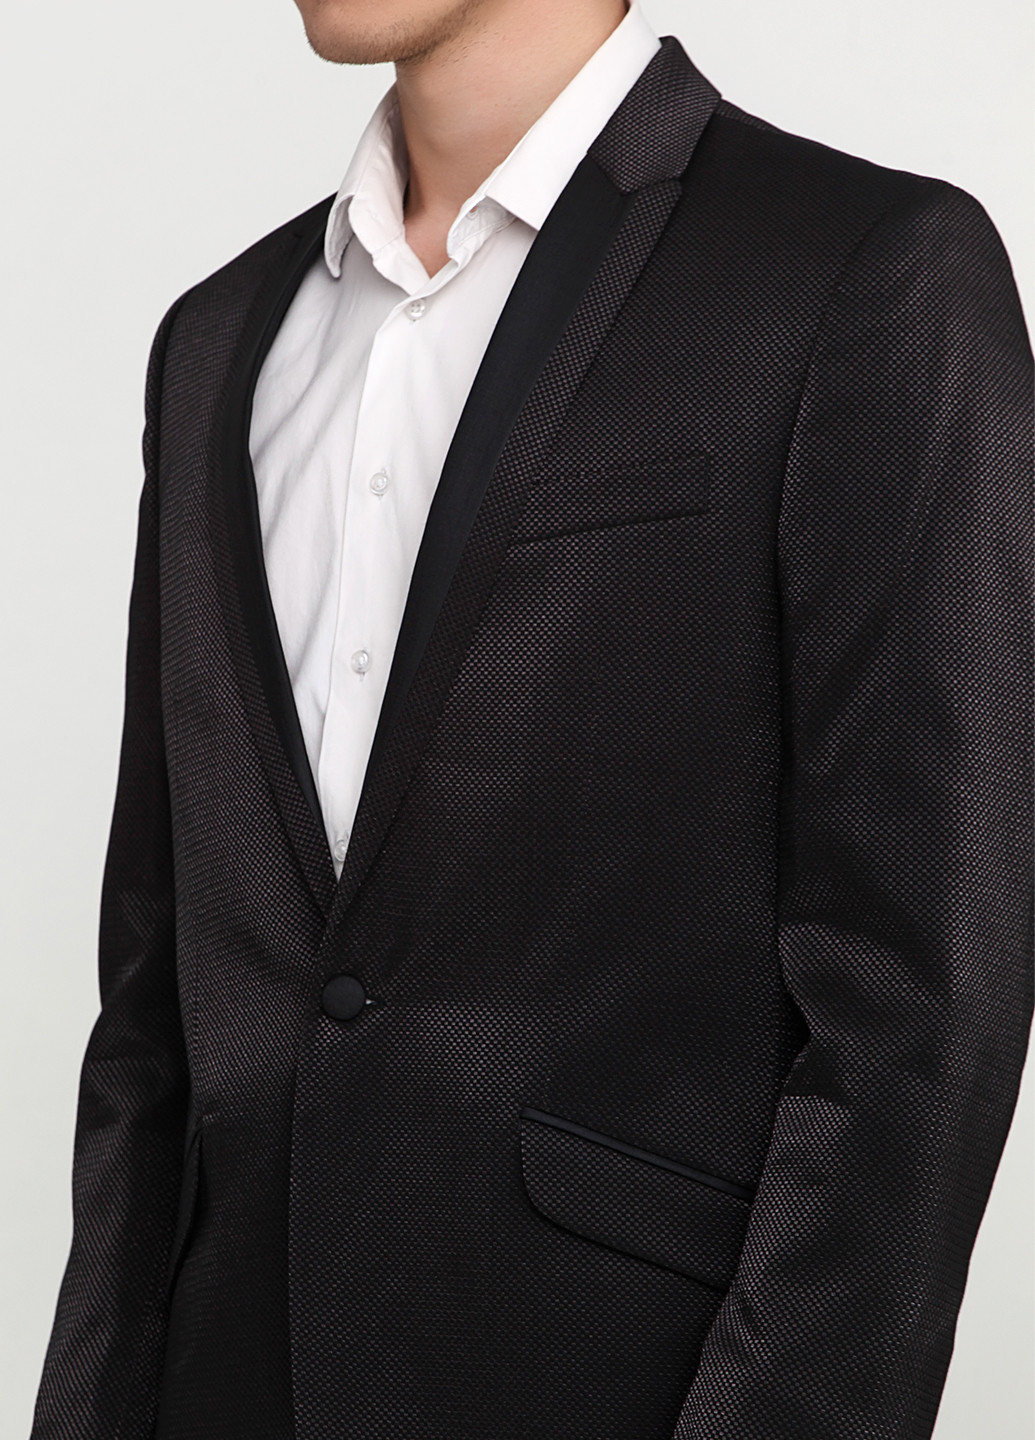 Грифельно-серый демисезонный костюм (пиджак, брюки) брючный Миа-Стиль